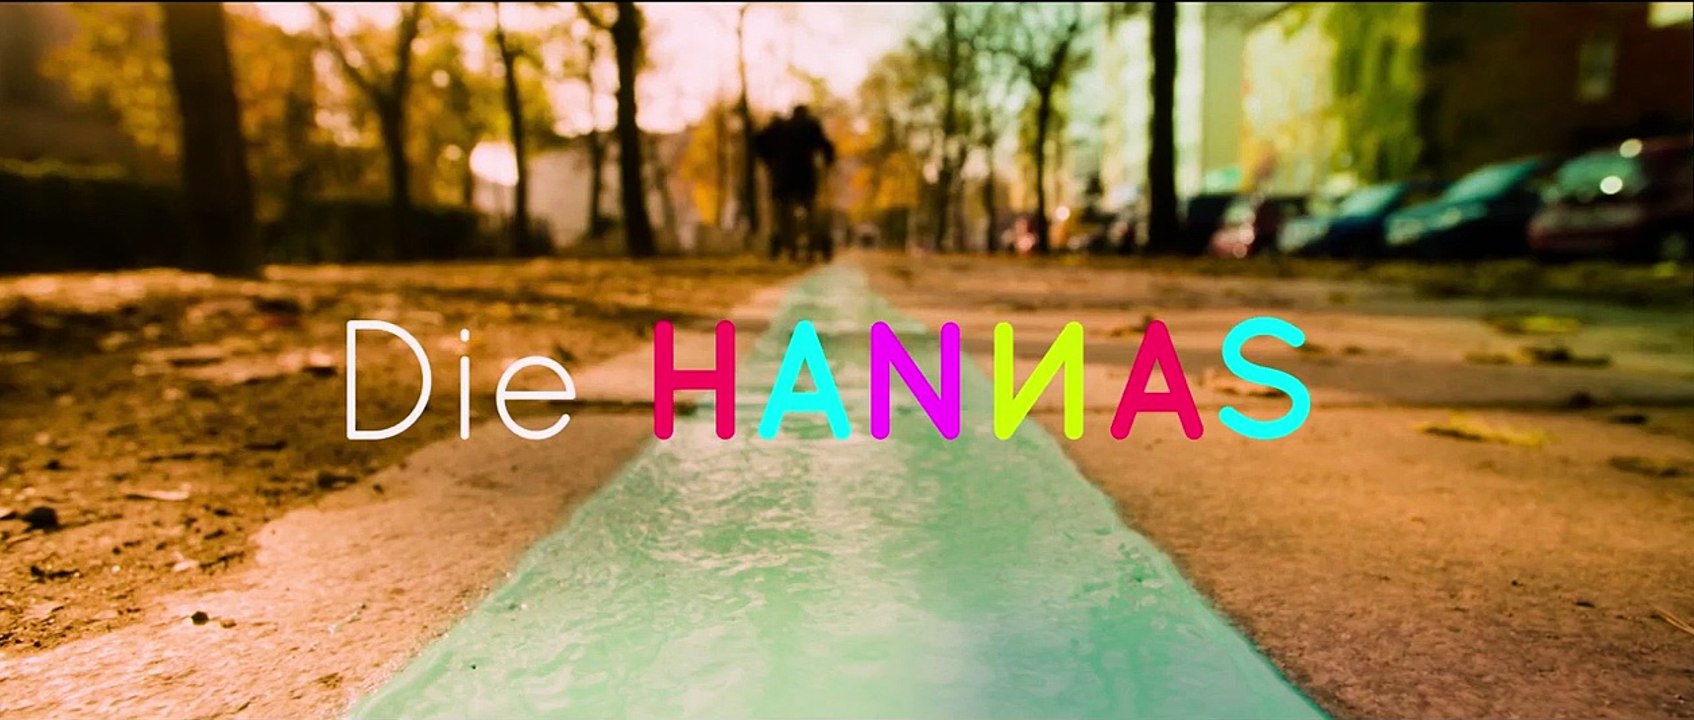 Die Hannas Trailer DF